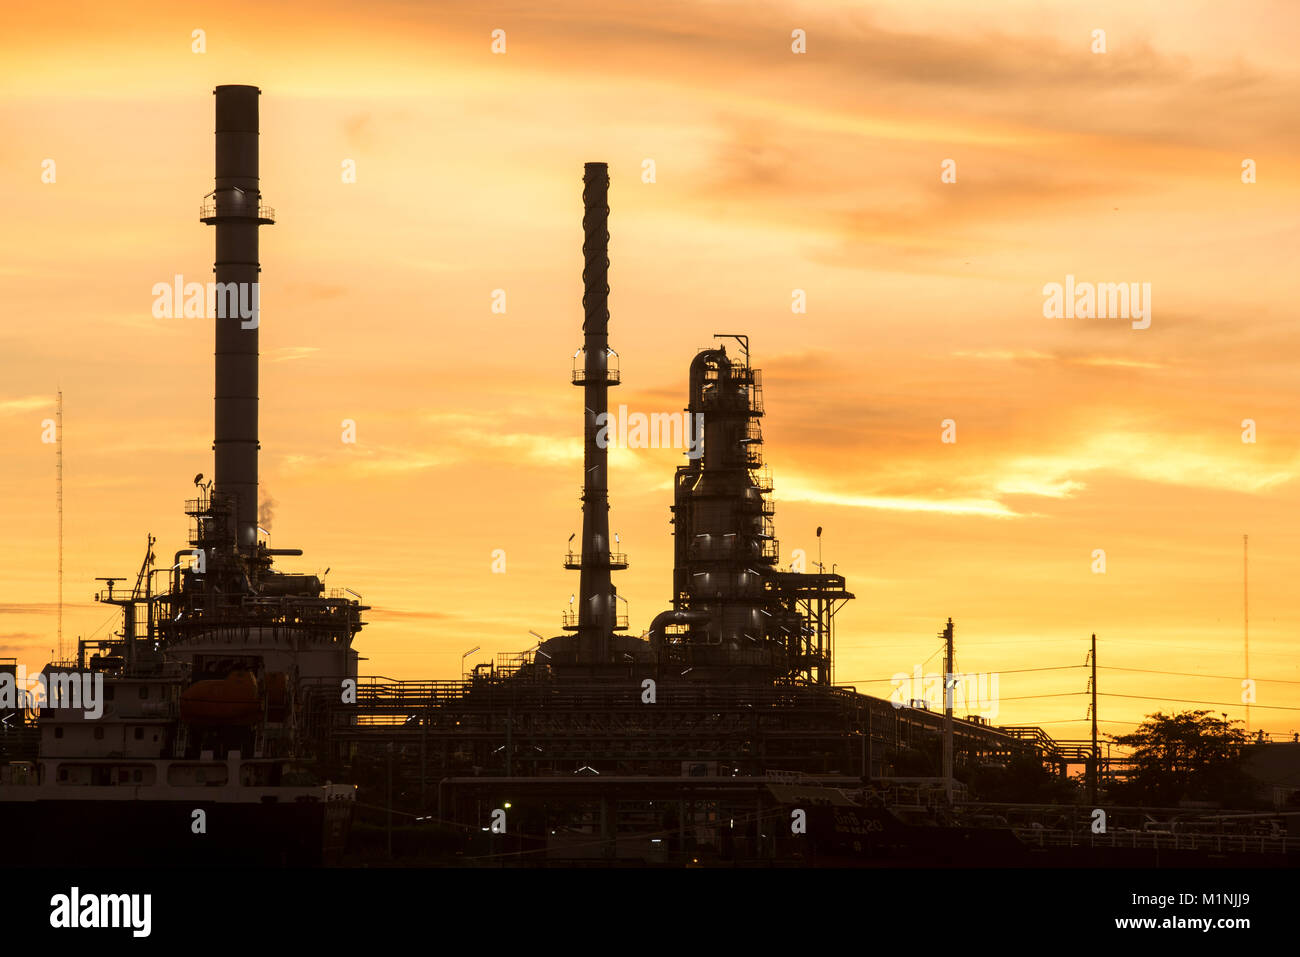 La industria de la refinería de petróleo y gas en el ocaso de fábrica Foto de stock